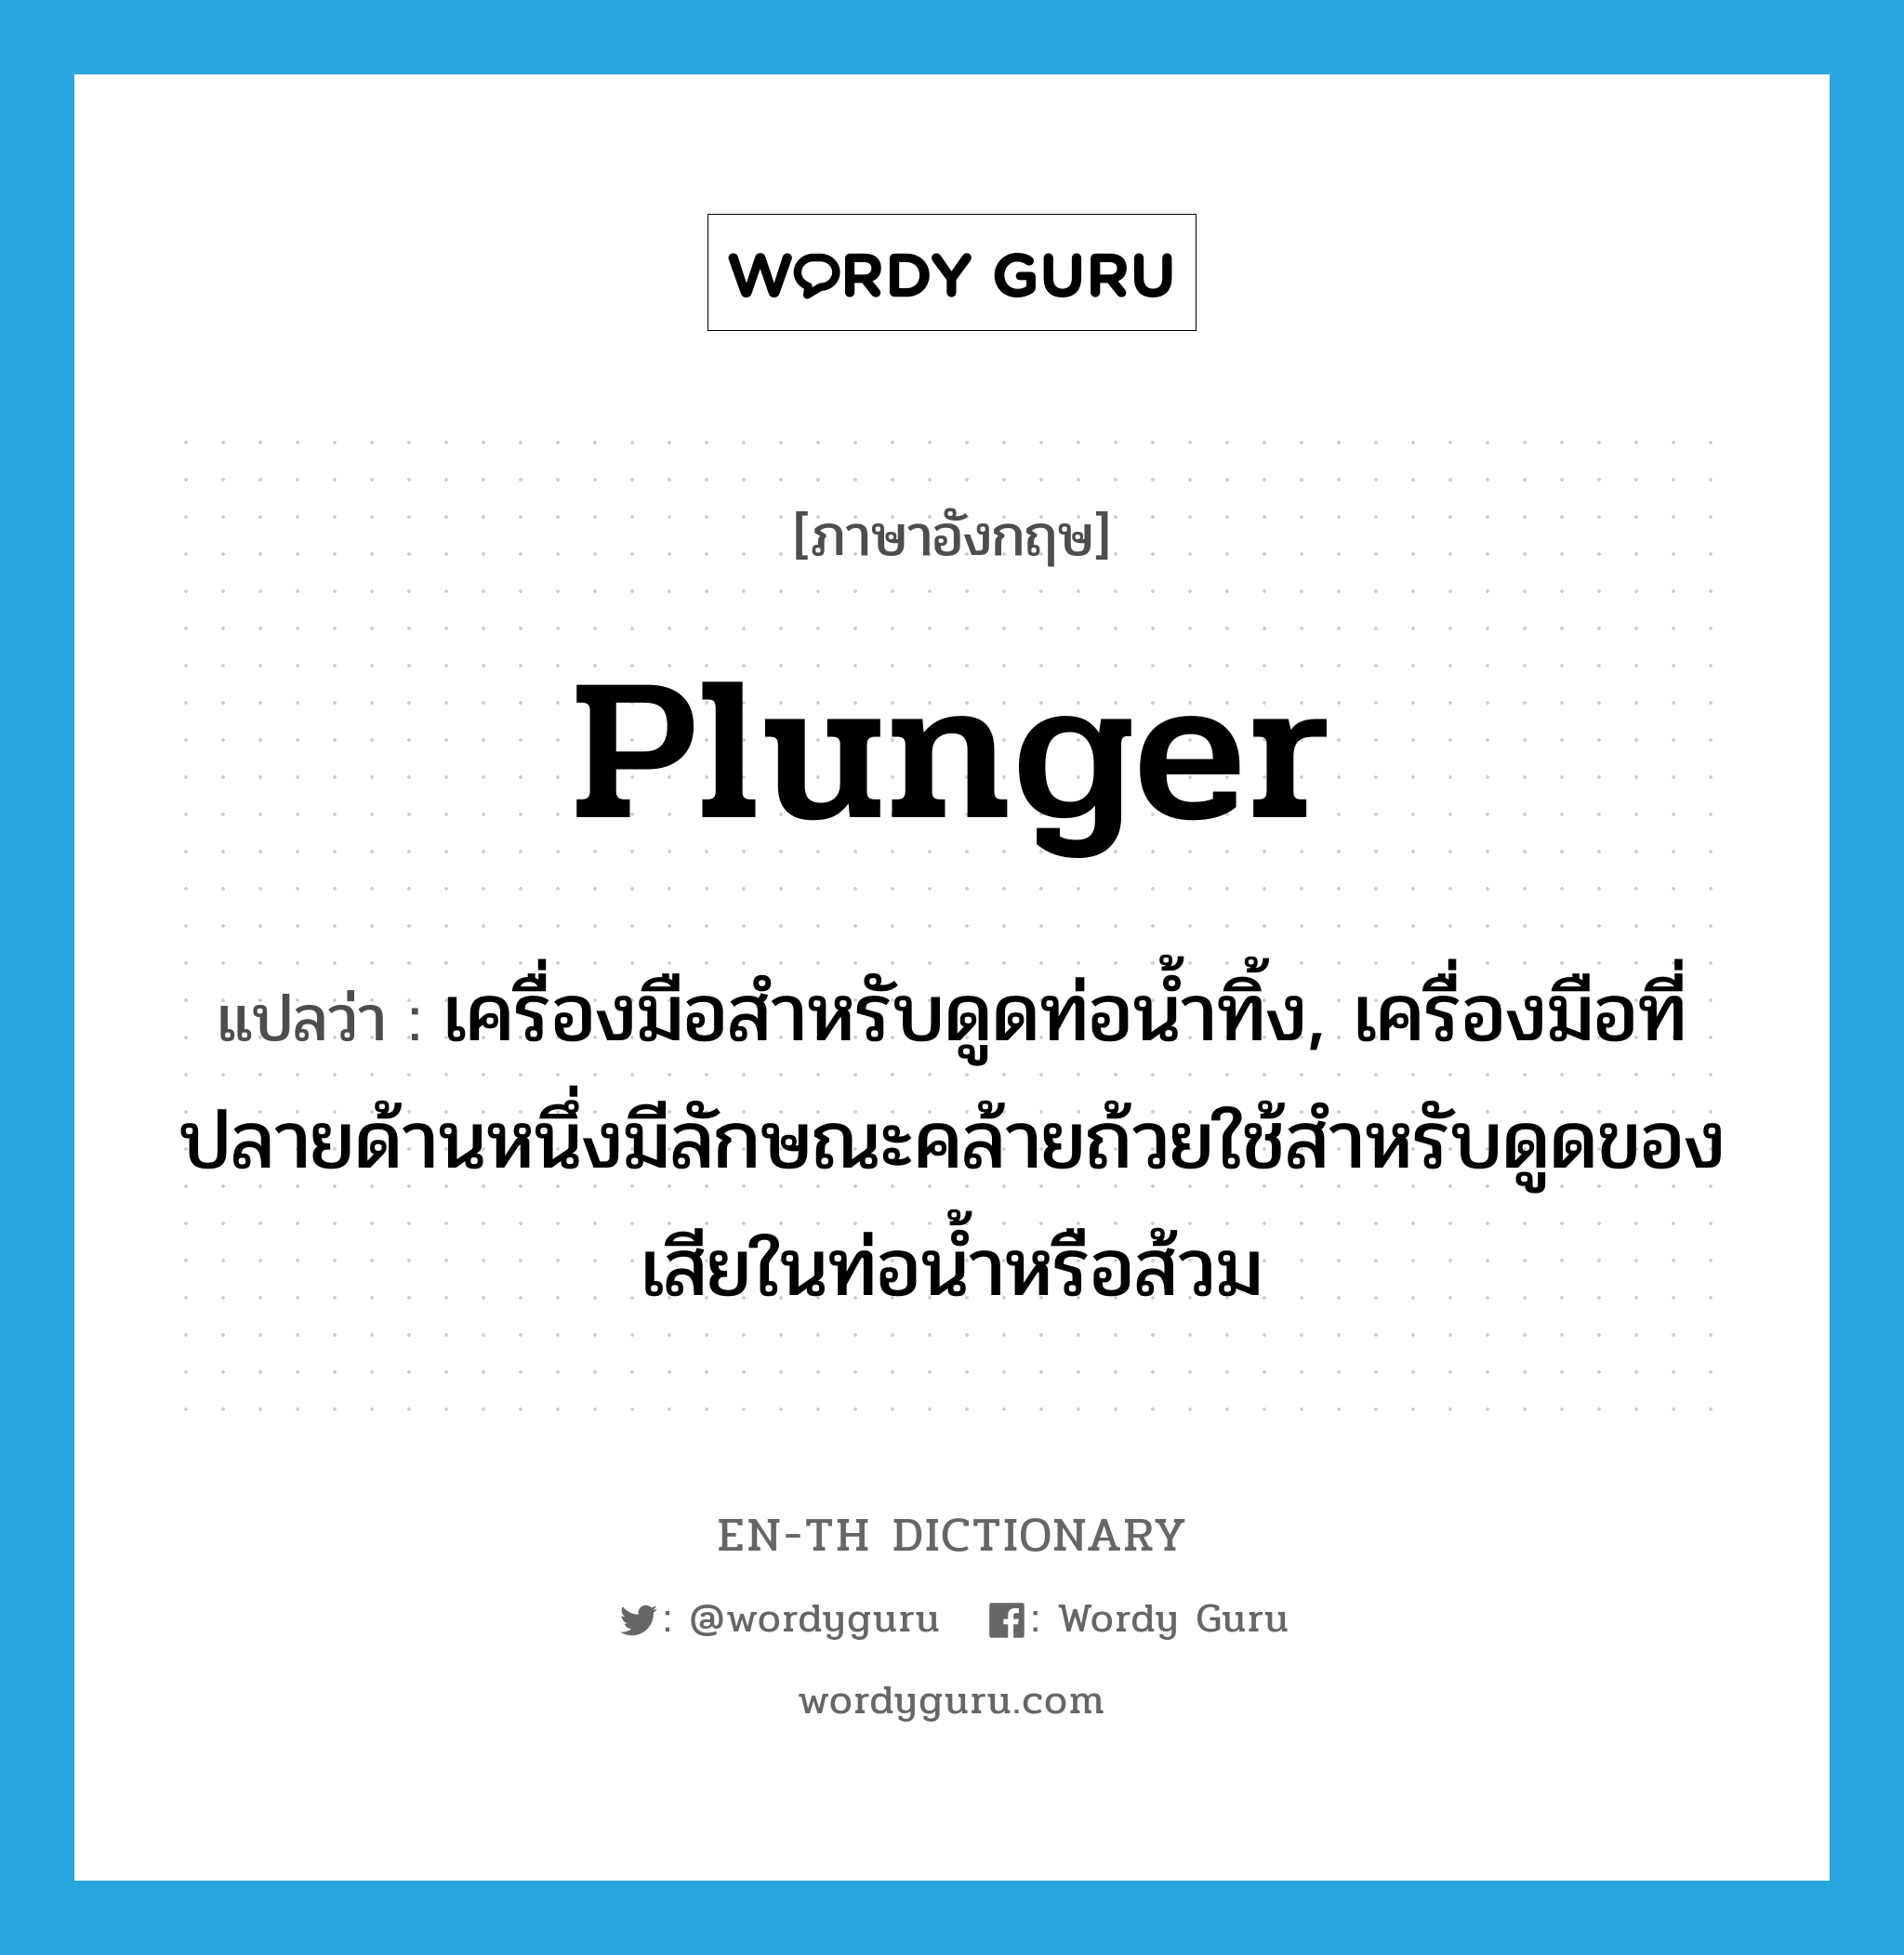 plunger แปลว่า?, คำศัพท์ภาษาอังกฤษ plunger แปลว่า เครื่องมือสำหรับดูดท่อน้ำทิ้ง, เครื่องมือที่ปลายด้านหนึ่งมีลักษณะคล้ายถ้วยใช้สำหรับดูดของเสียในท่อน้ำหรือส้วม ประเภท N หมวด N